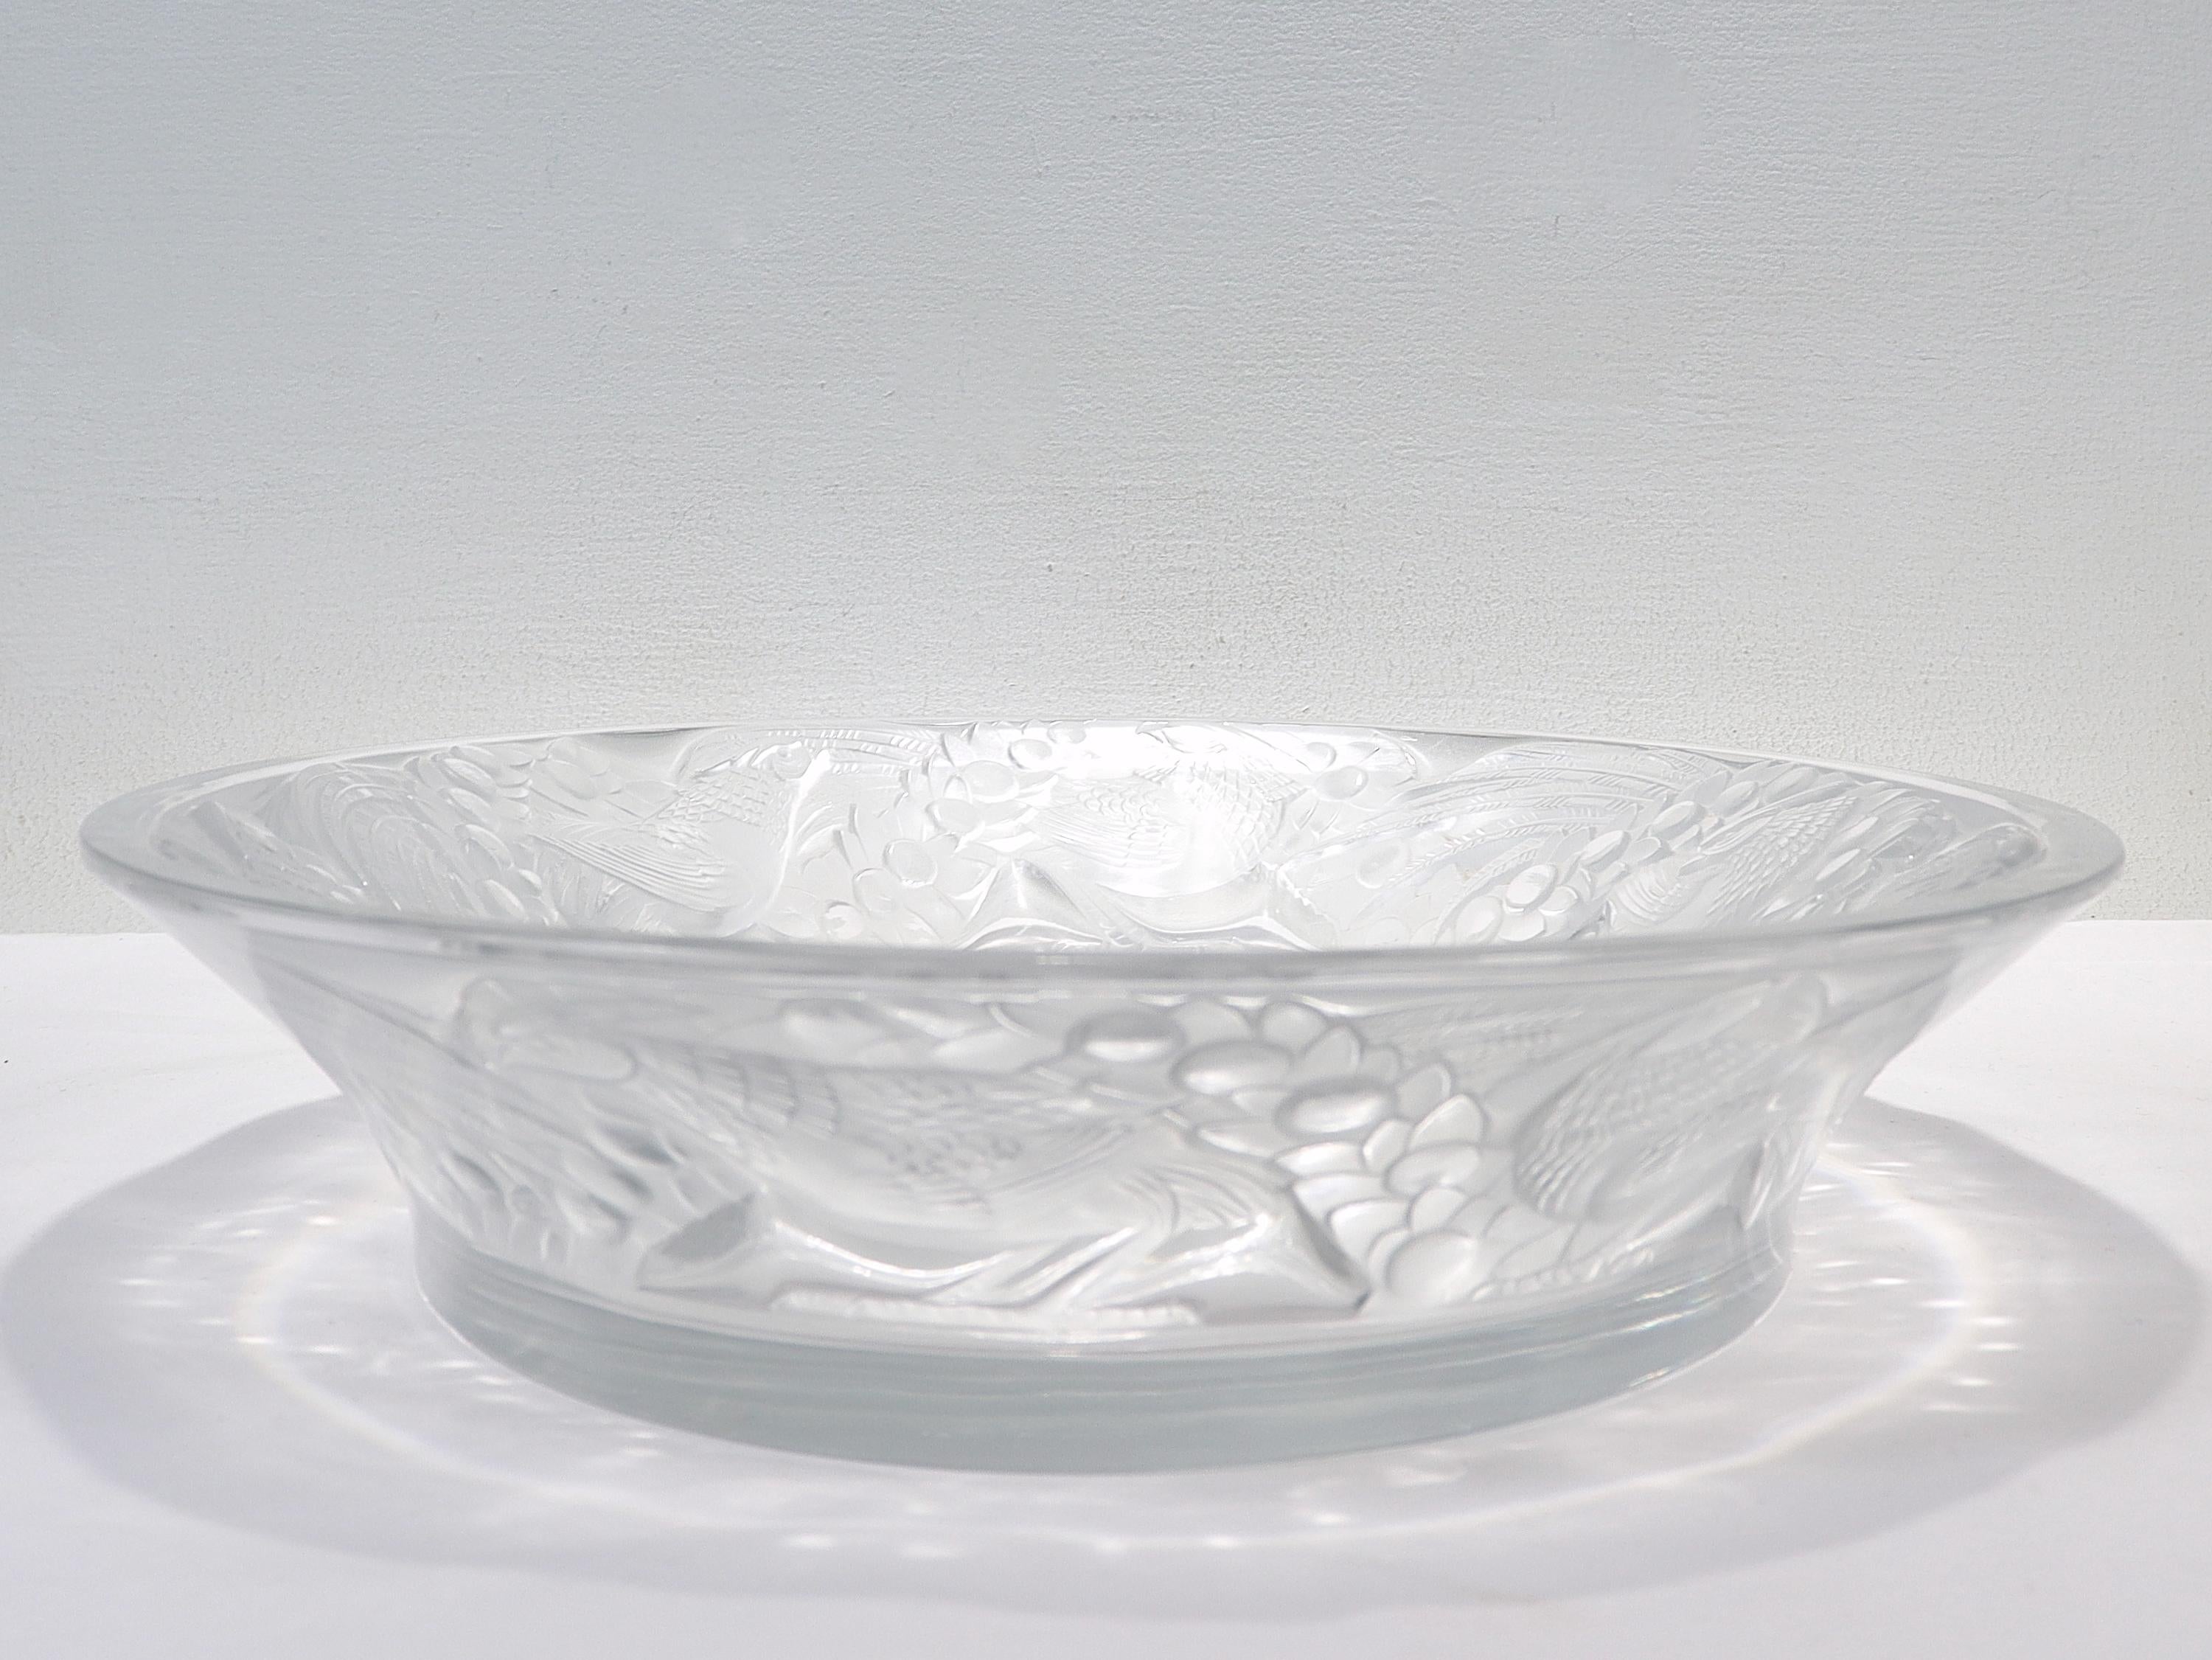 20th Century Antique Lalique Art Glass 'Faisans' Oval Bowl with Wide Rim Decor For Sale